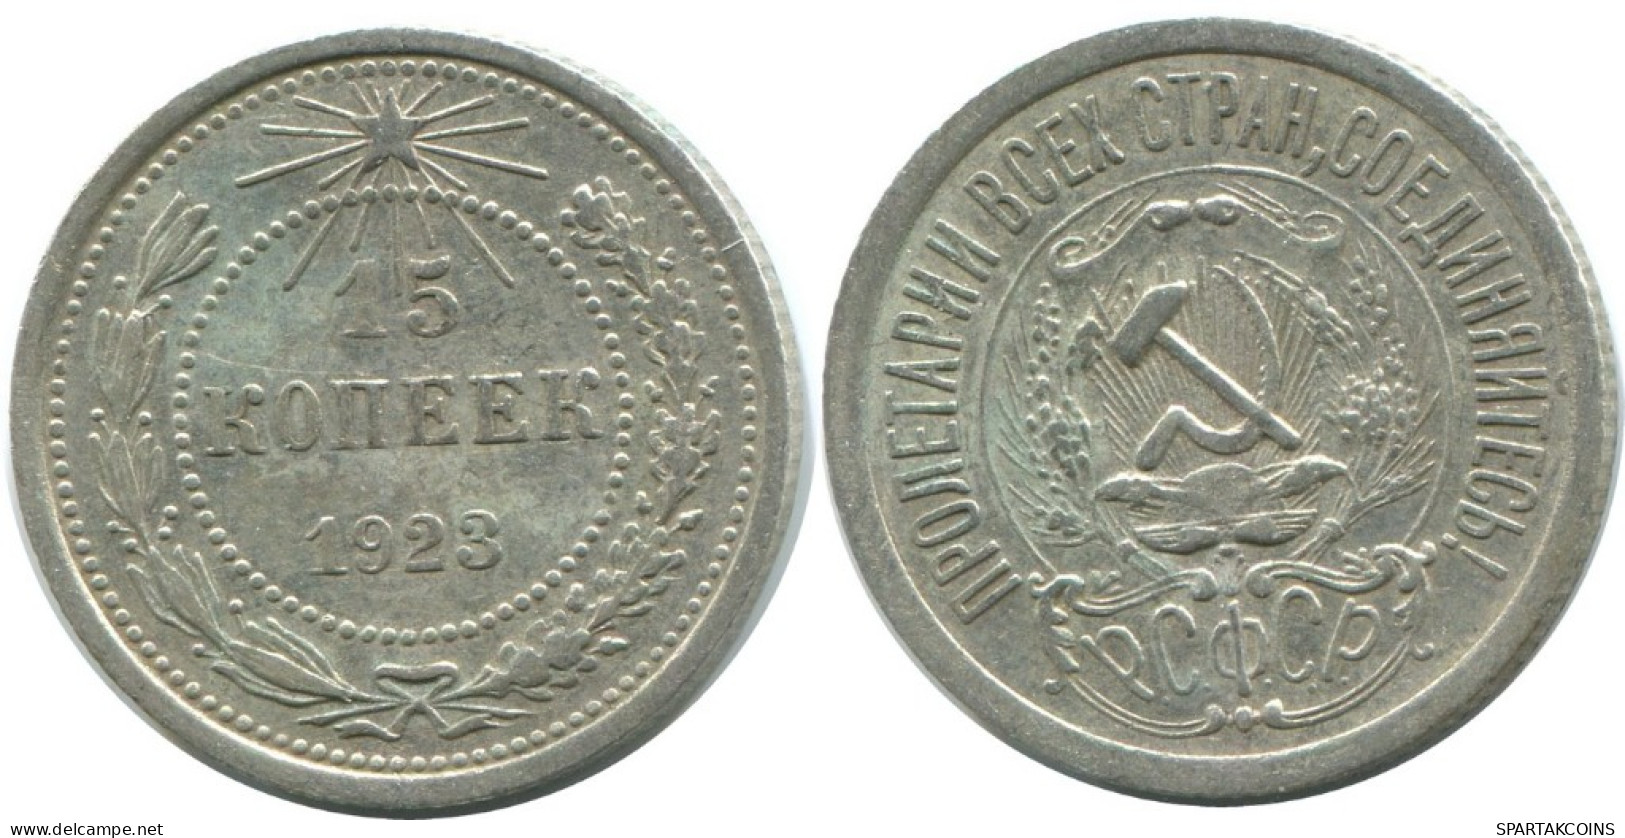 15 KOPEKS 1923 RUSSIA RSFSR SILVER Coin HIGH GRADE #AF103.4.U.A - Russland